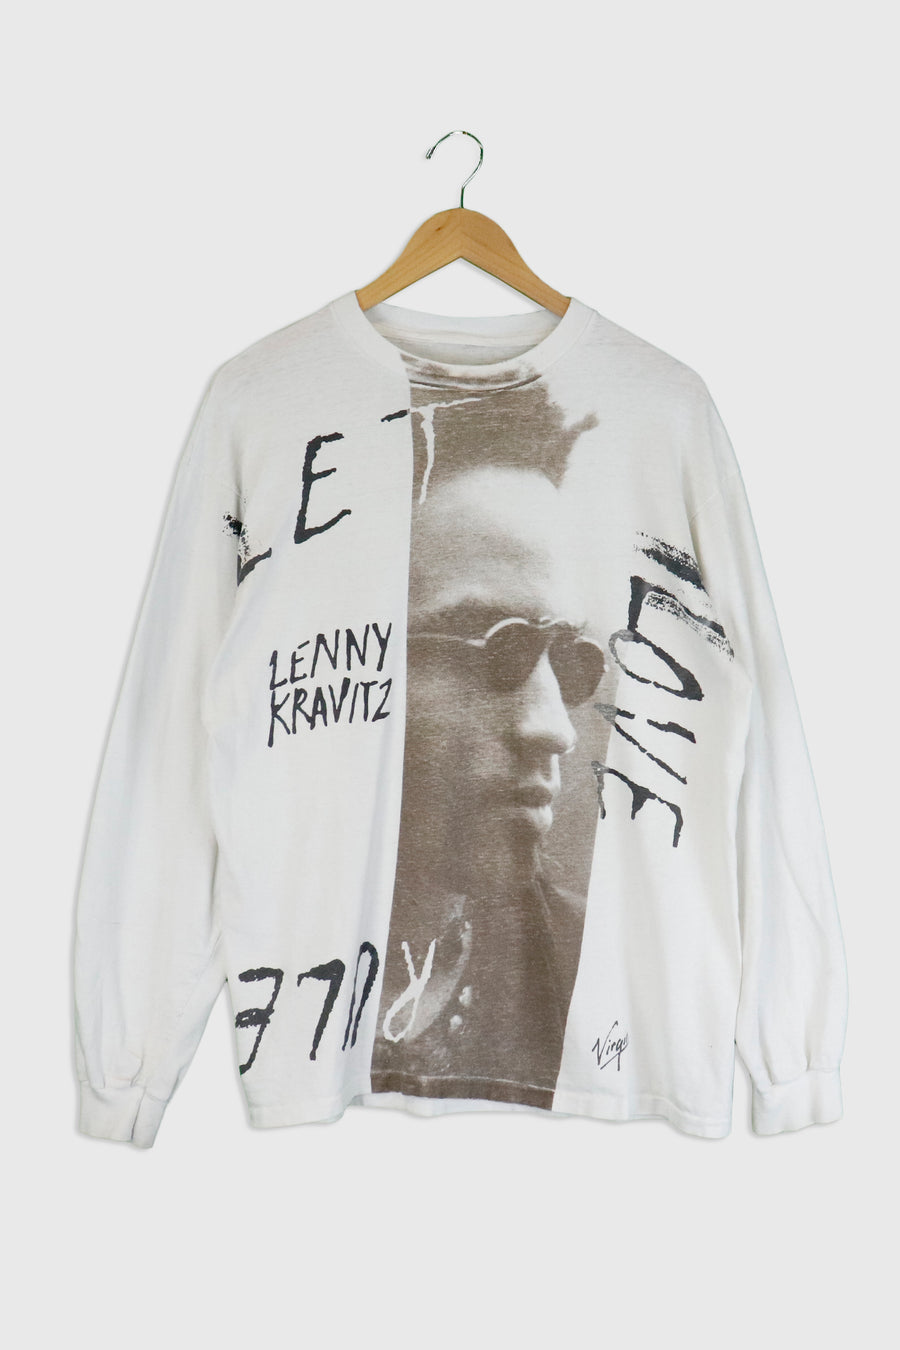 Vintage Lenny Kravits Virgin Mobile T Shirt